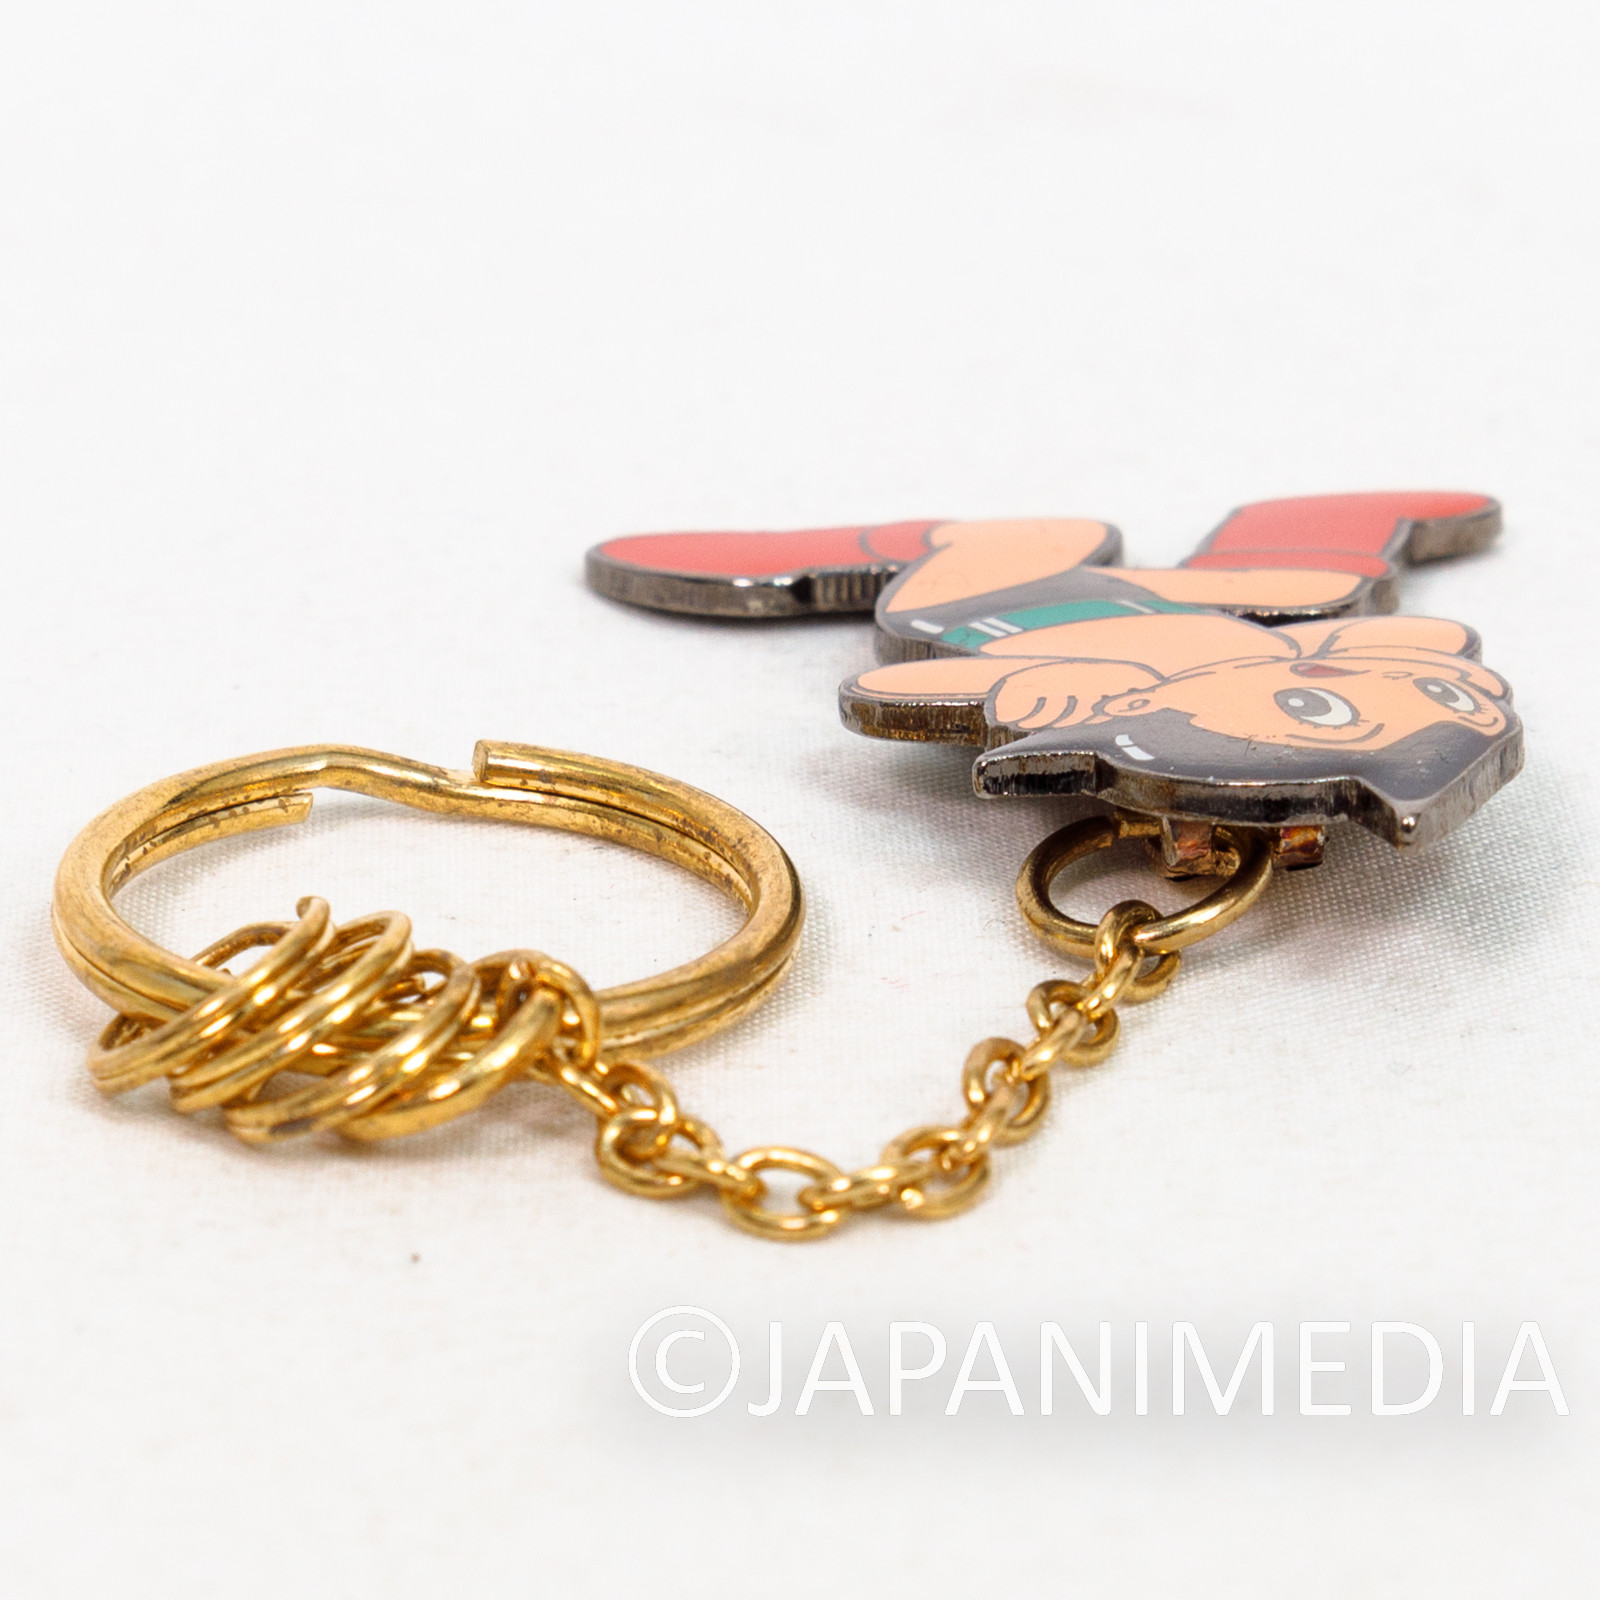 Astro Boy Atom Metal Charm Keychain / Osamu Tezuka